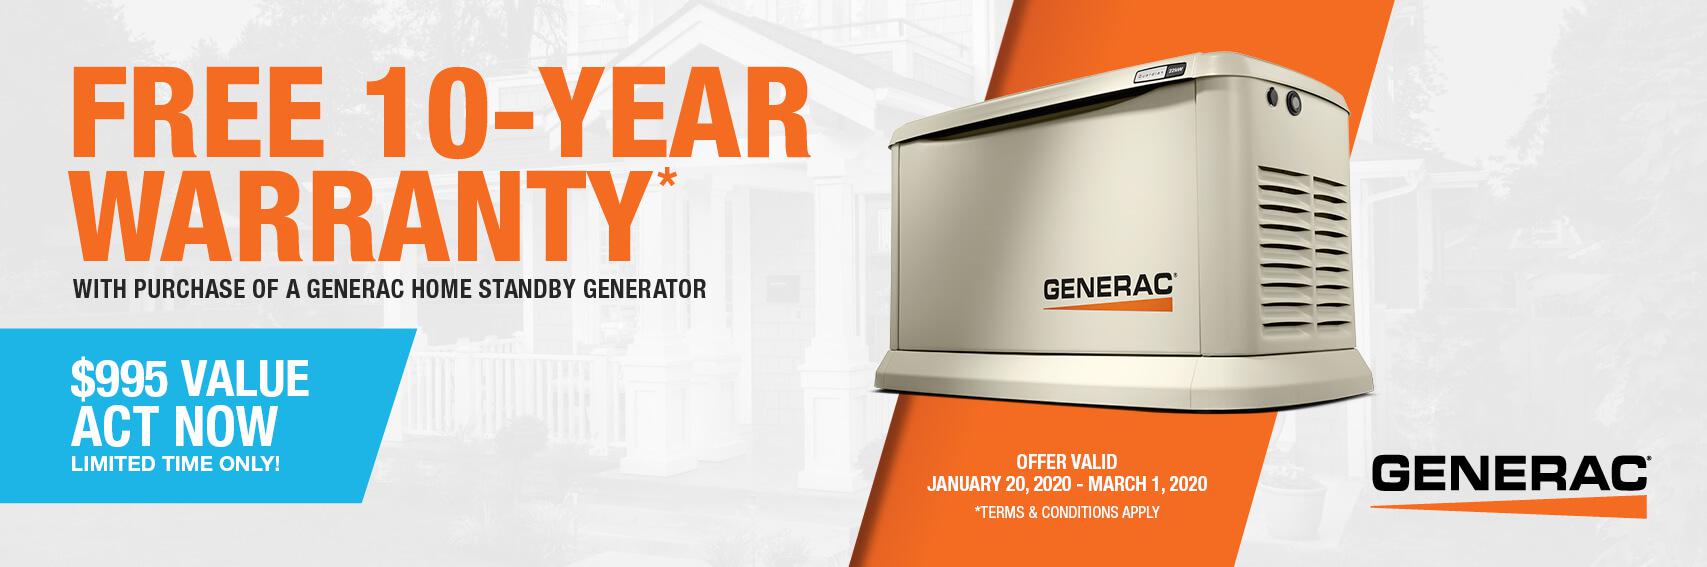 Homestandby Generator Deal | Warranty Offer | Generac Dealer | Wasilla, AK